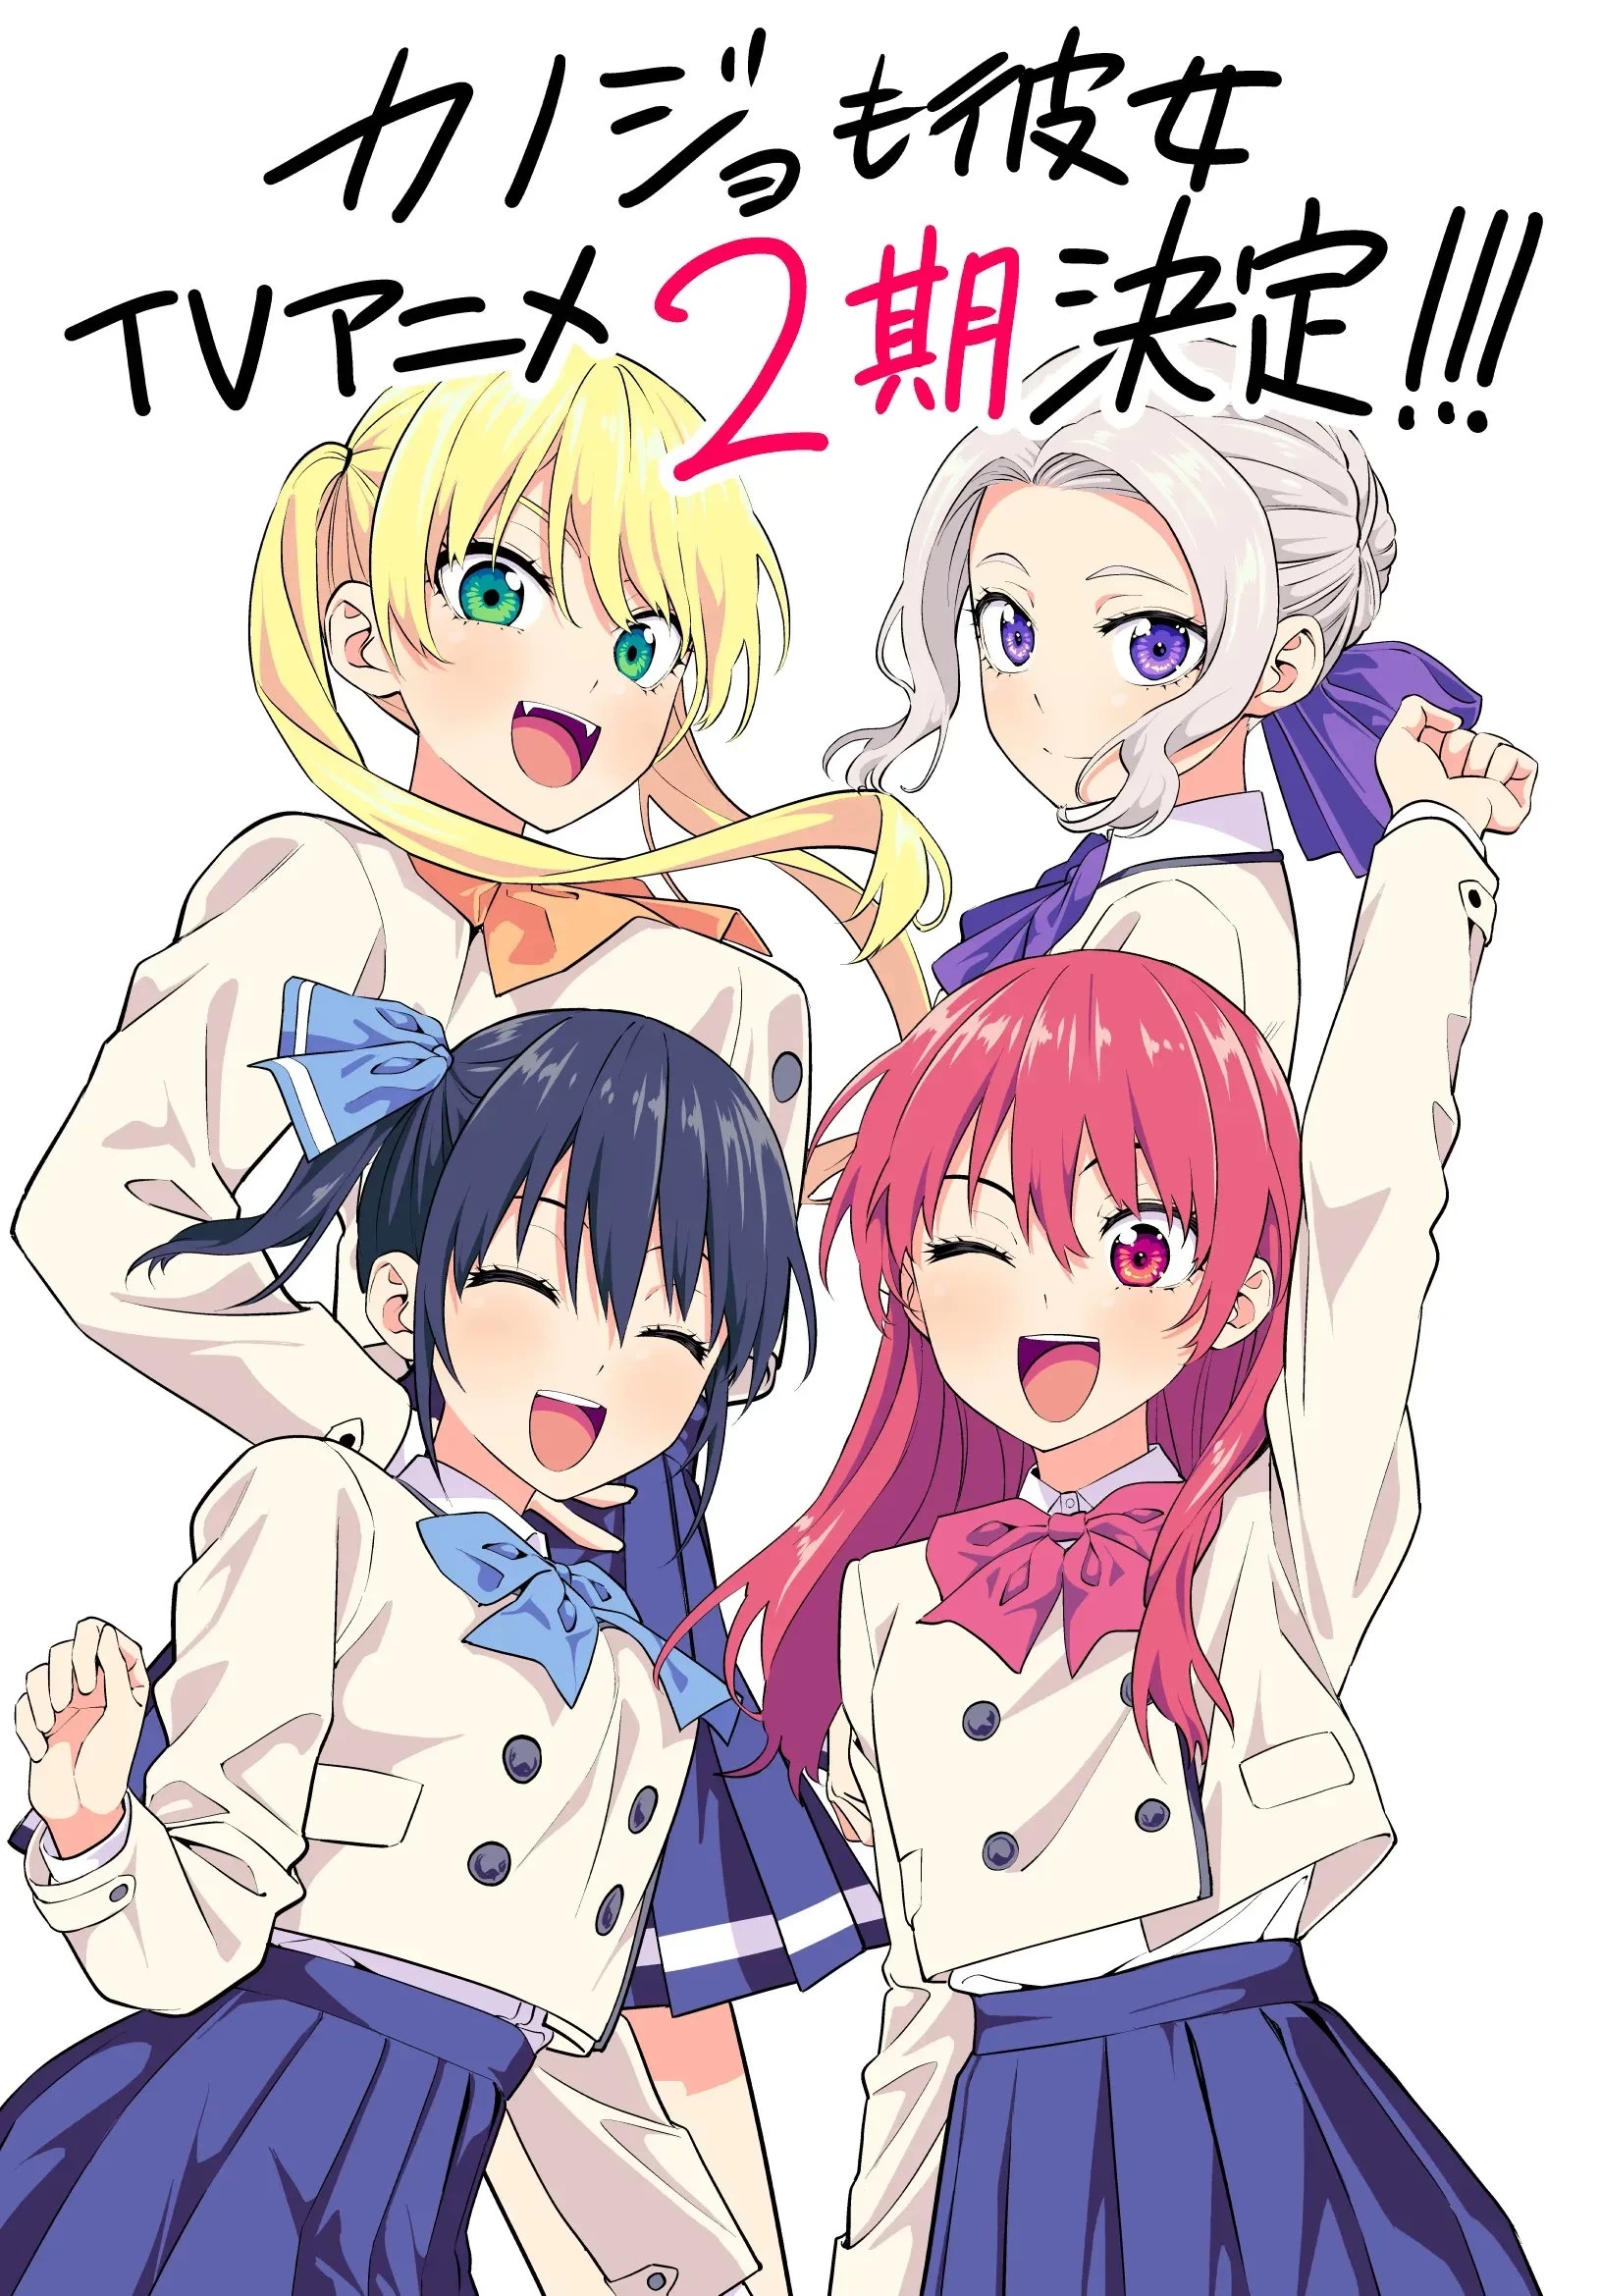 11 Rekomendasi Anime Fall 2023 Halaman 2 - Varia